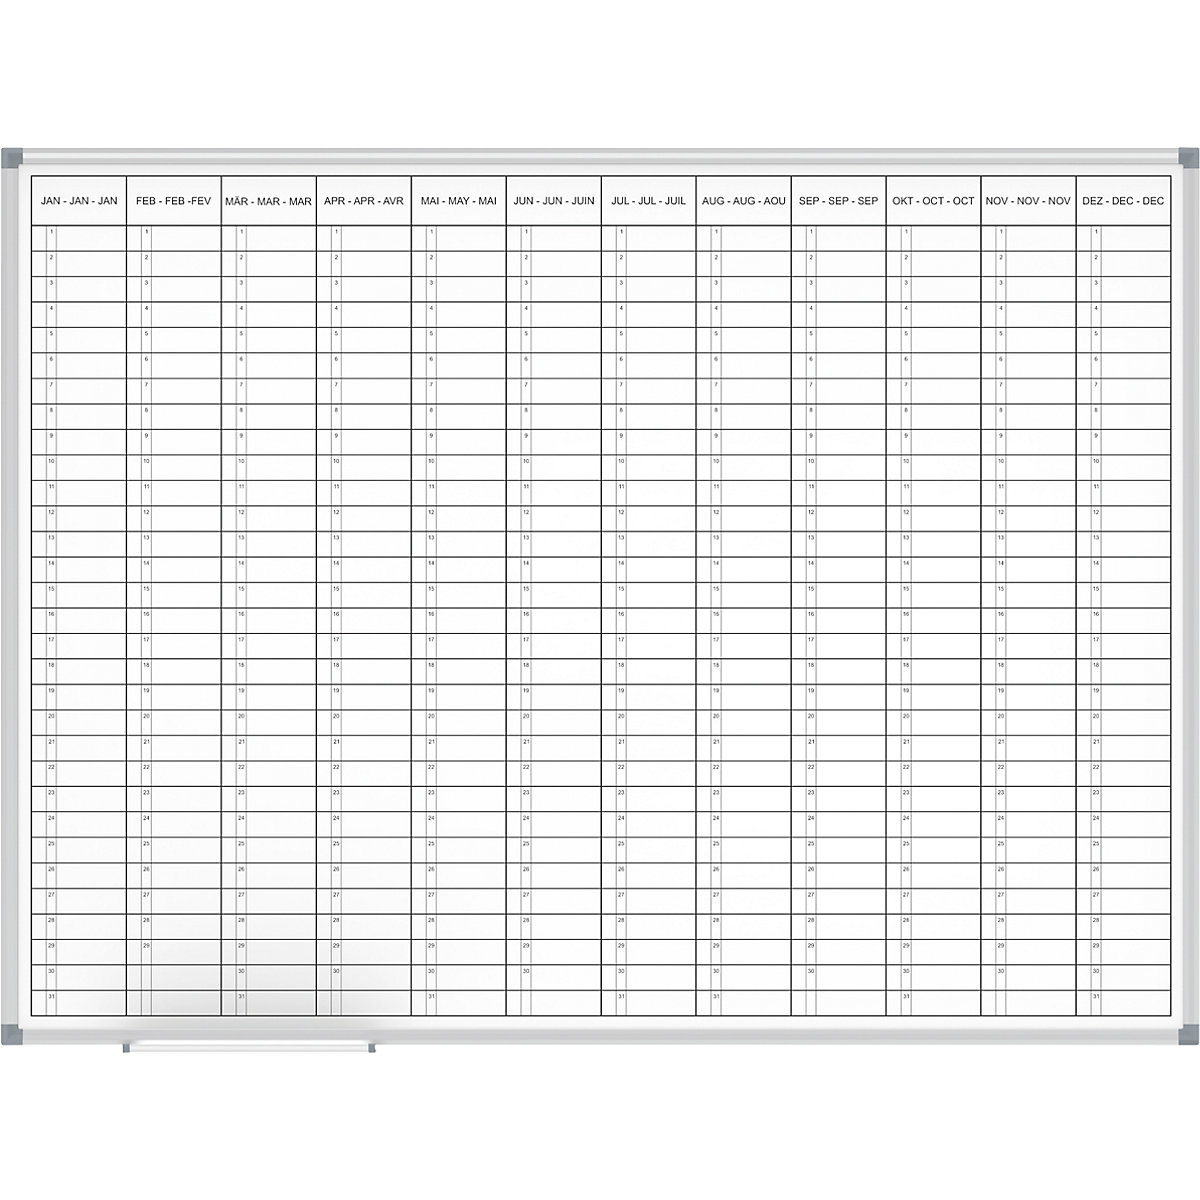 Plánovací tabule – MAUL, roční plánovač, náhled 12 měsíců, šířka 1200 mm